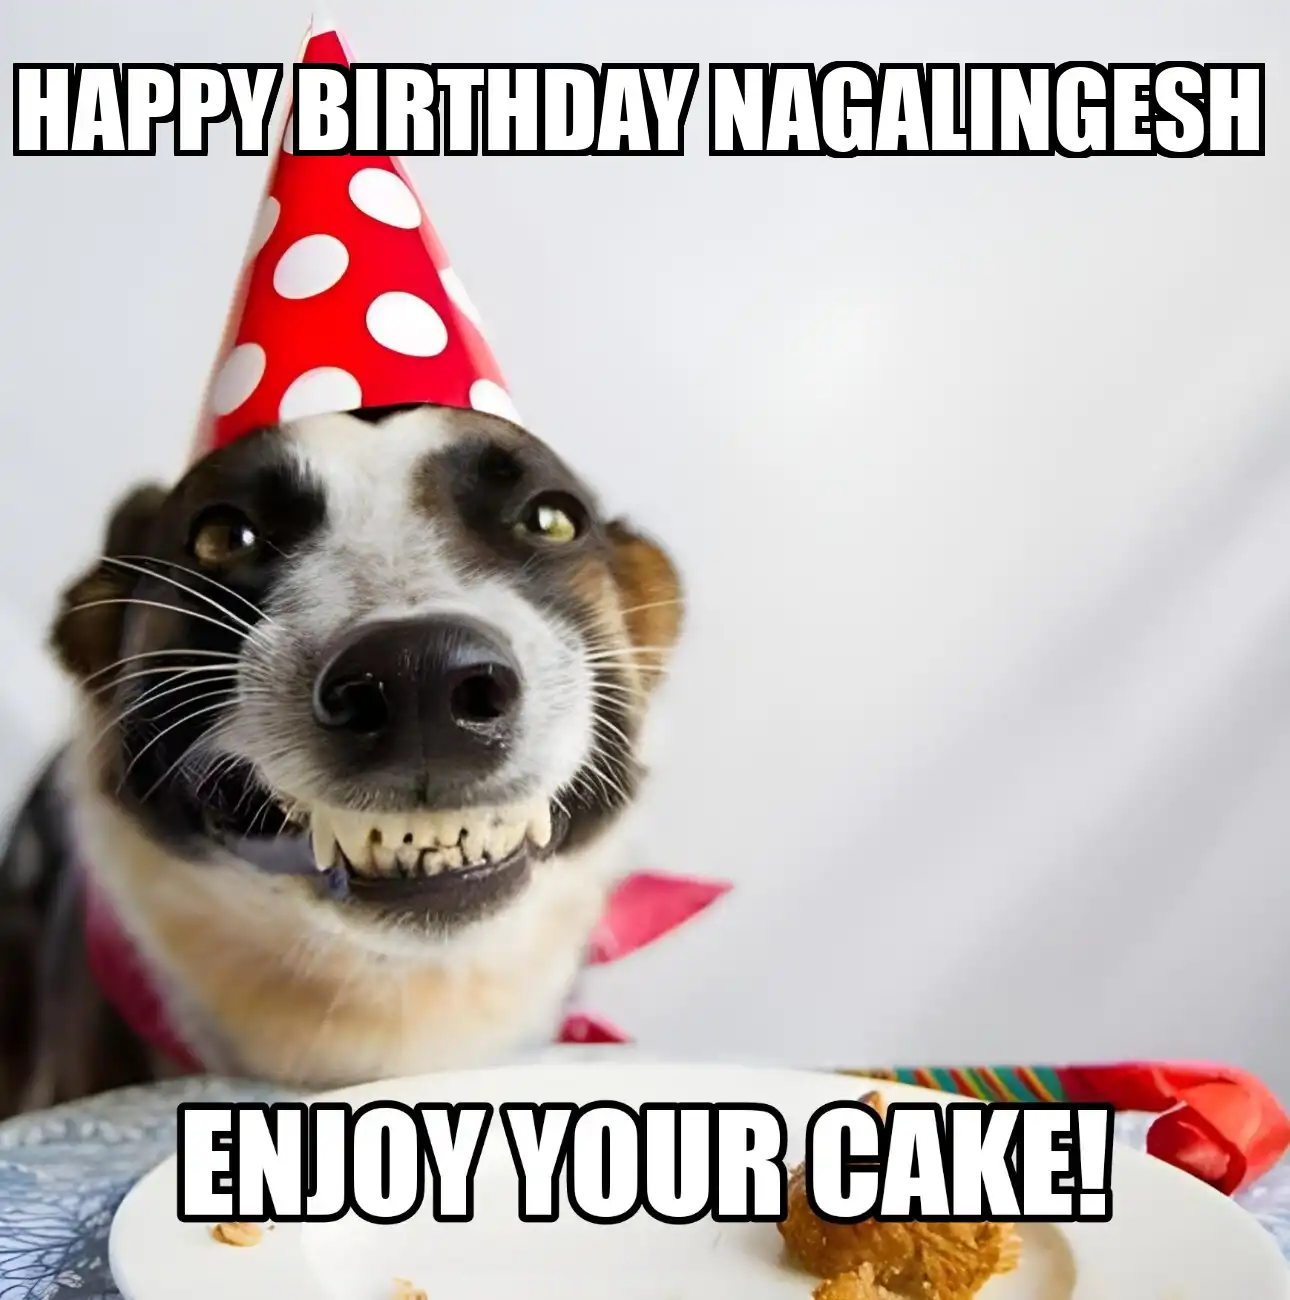 Happy Birthday Nagalingesh Enjoy Your Cake Dog Meme